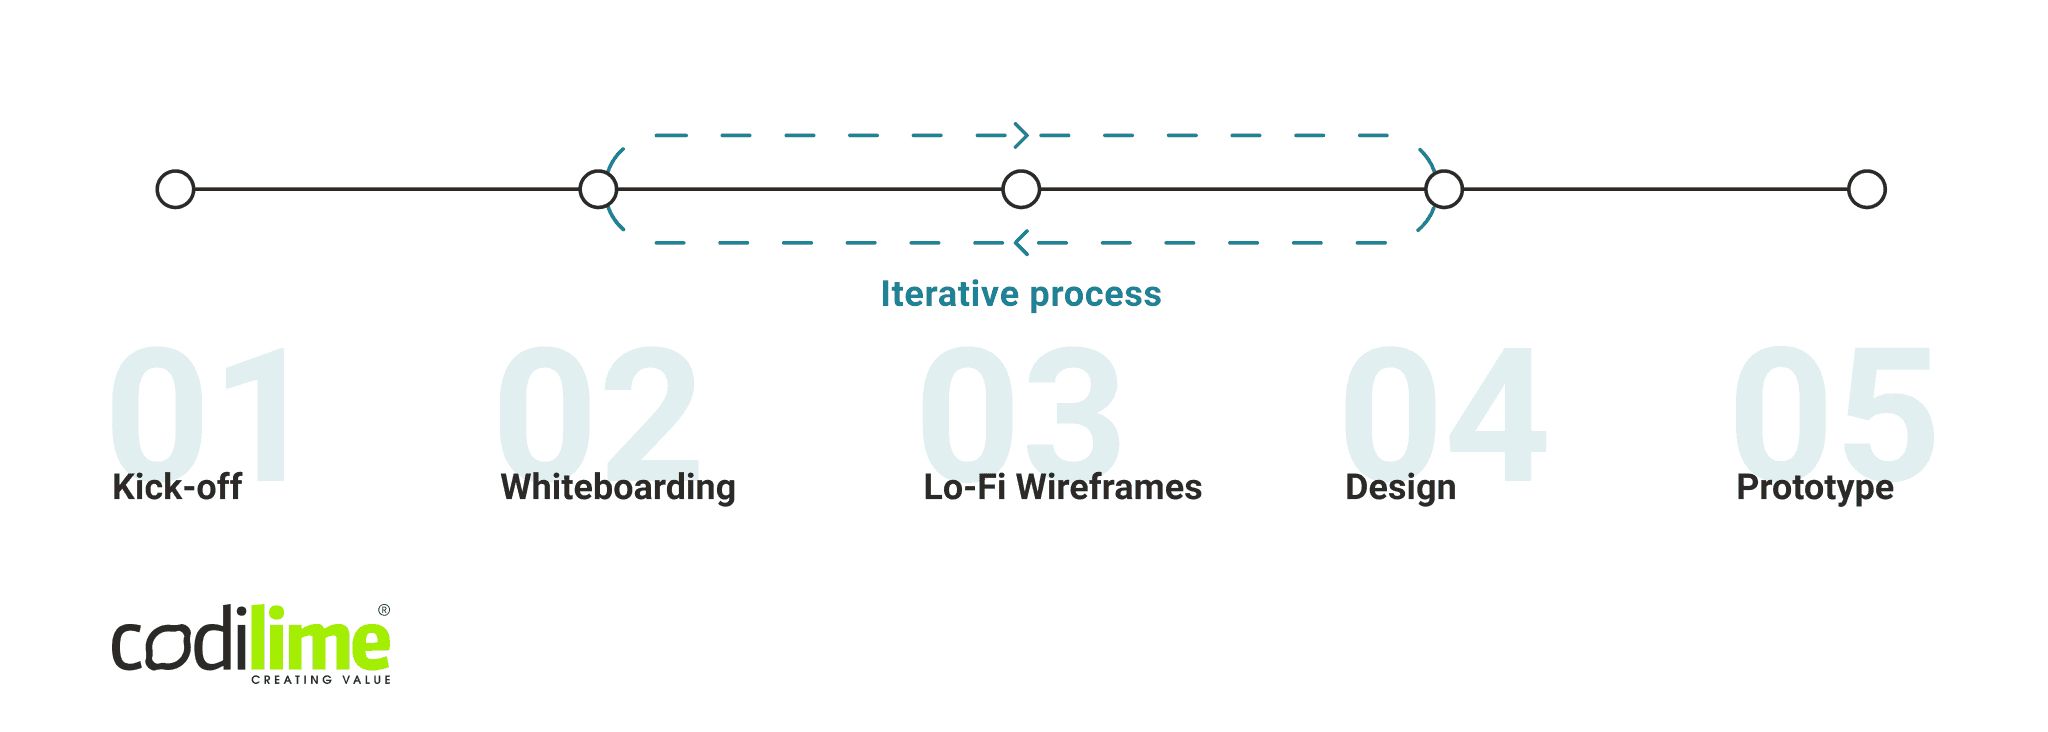 UX prototype process